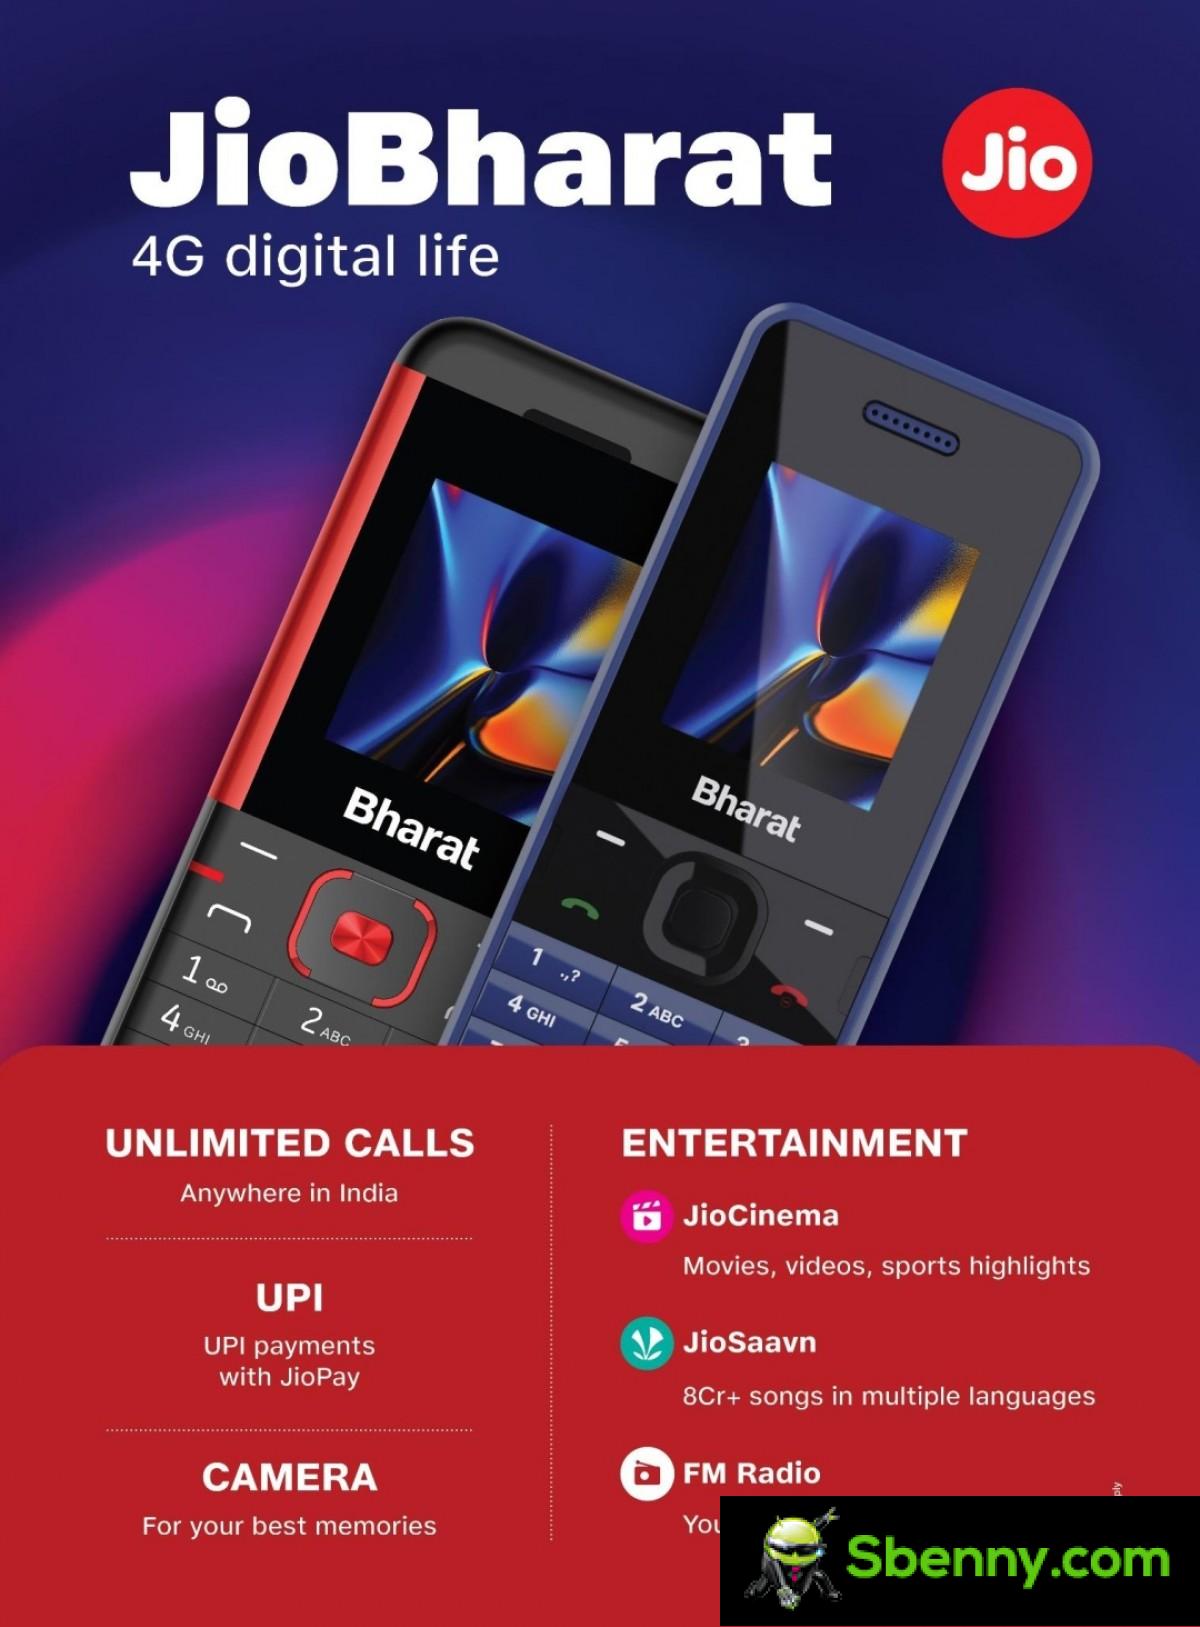 Jio prevede di portare online 250 milioni di persone con feature phone 4G convenienti